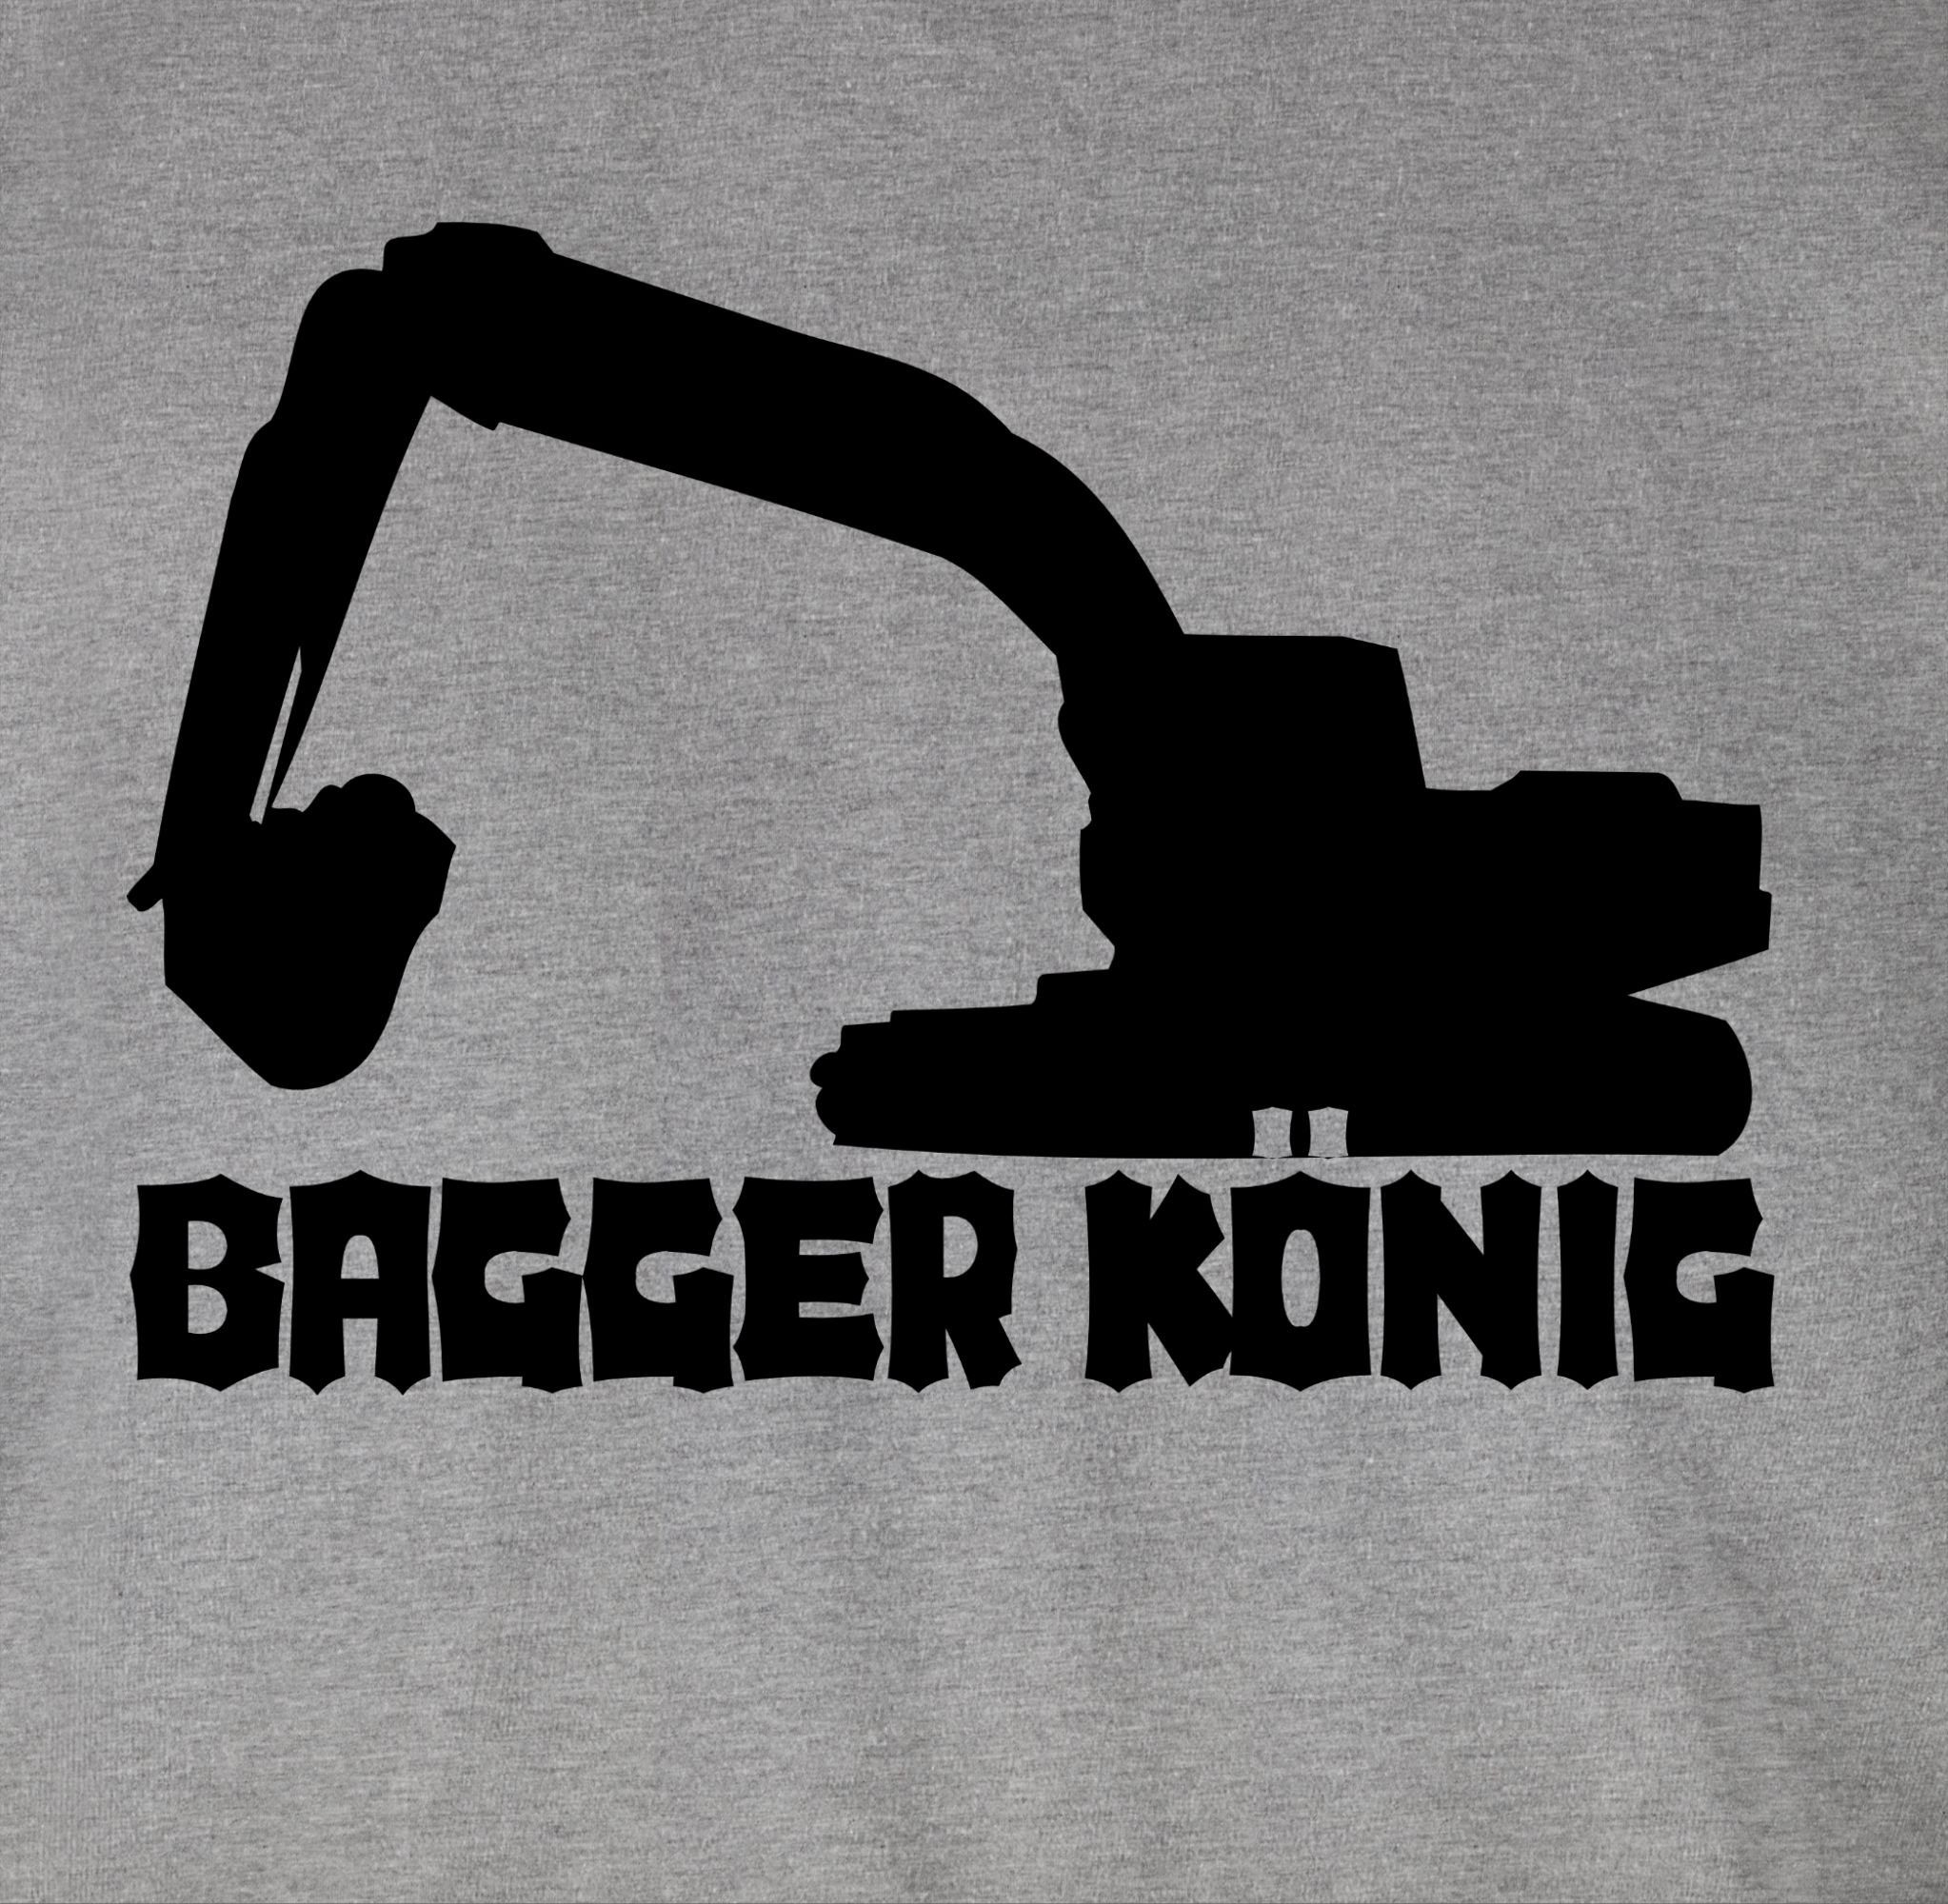 Shirtracer T-Shirt Bagger König 2 Grau meliert Fahrzeuge